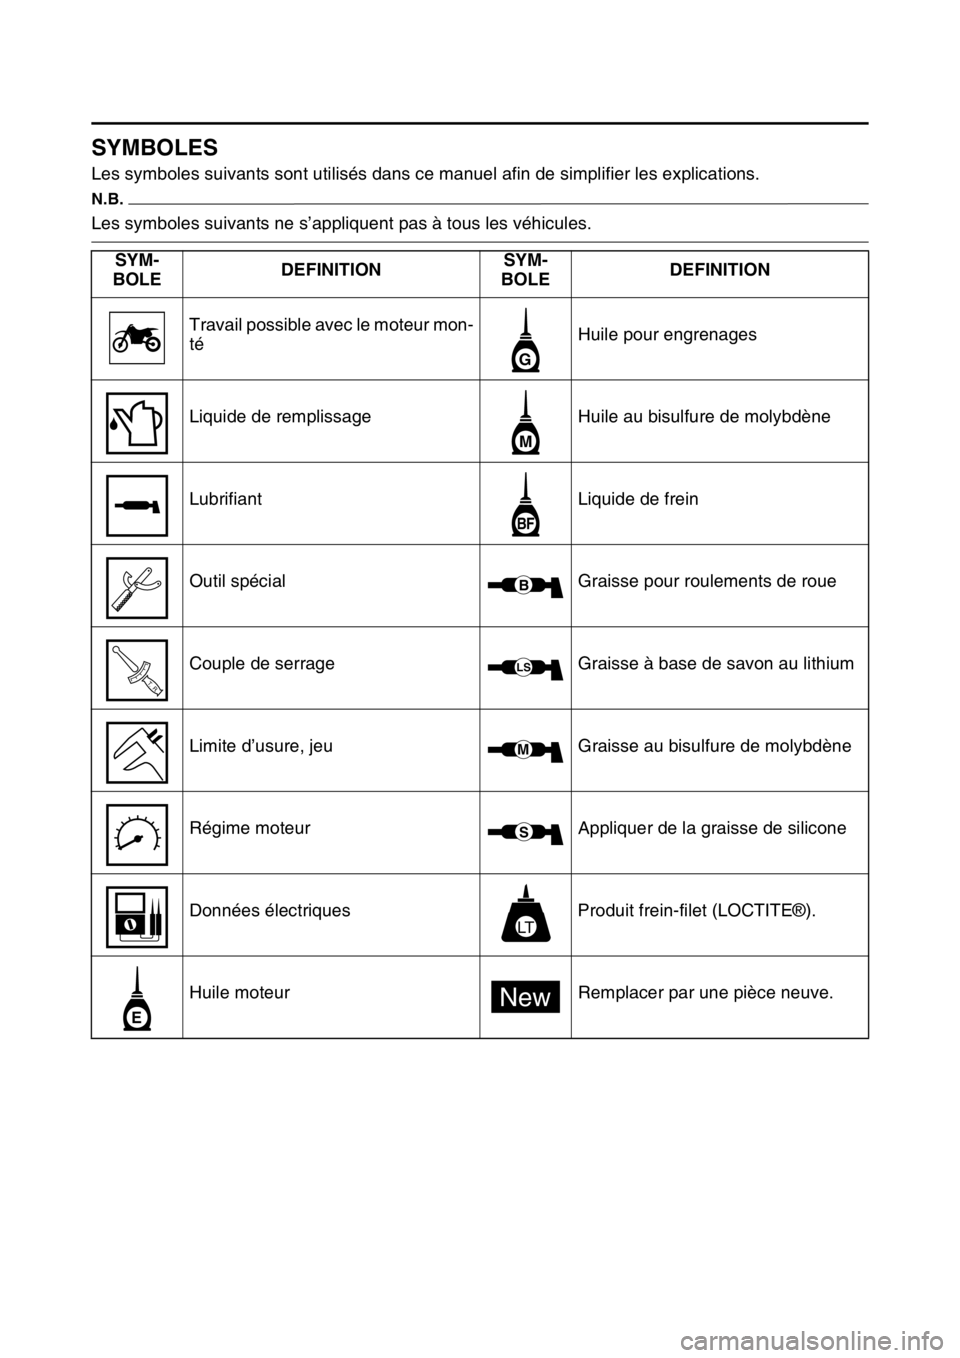 YAMAHA WR 250F 2016  Notices Demploi (in French) FAS2GB2007
SYMBOLES
Les symboles suivants sont utilisés dans ce manuel afin de simplifier les explications.
N.B.
Les symboles suivants ne s’appliquent pas à tous les véhicules.
SYM-
BOLEDEFINITIO